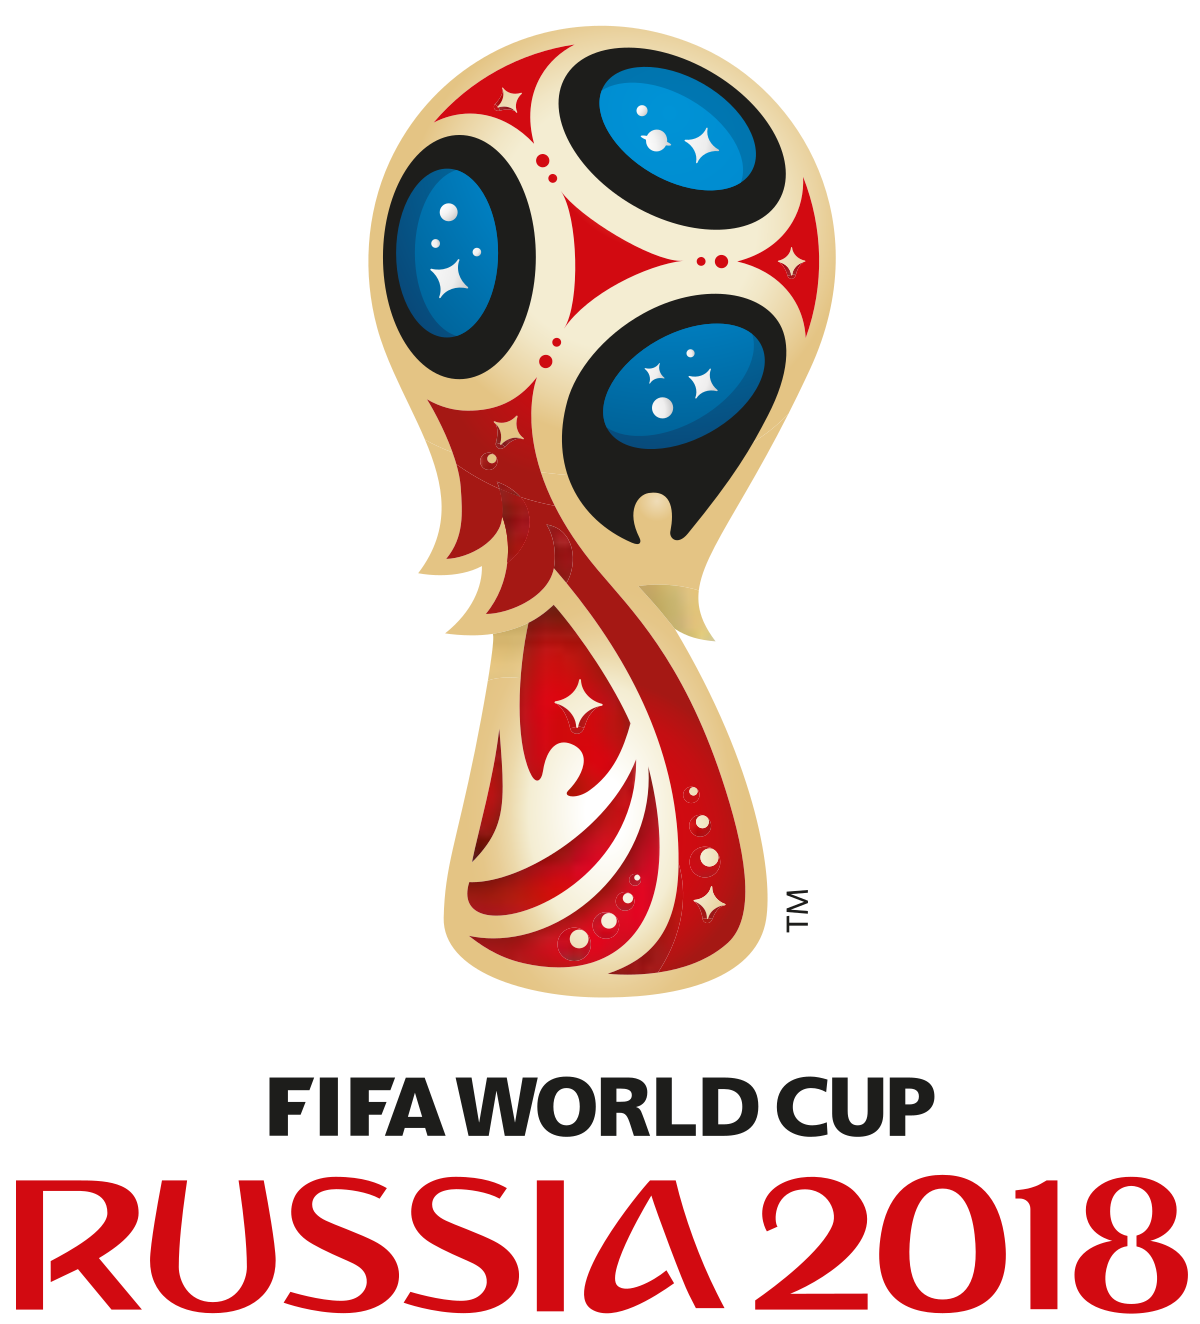 lo与威尔史密斯携手为2018年俄罗斯世界杯赛事